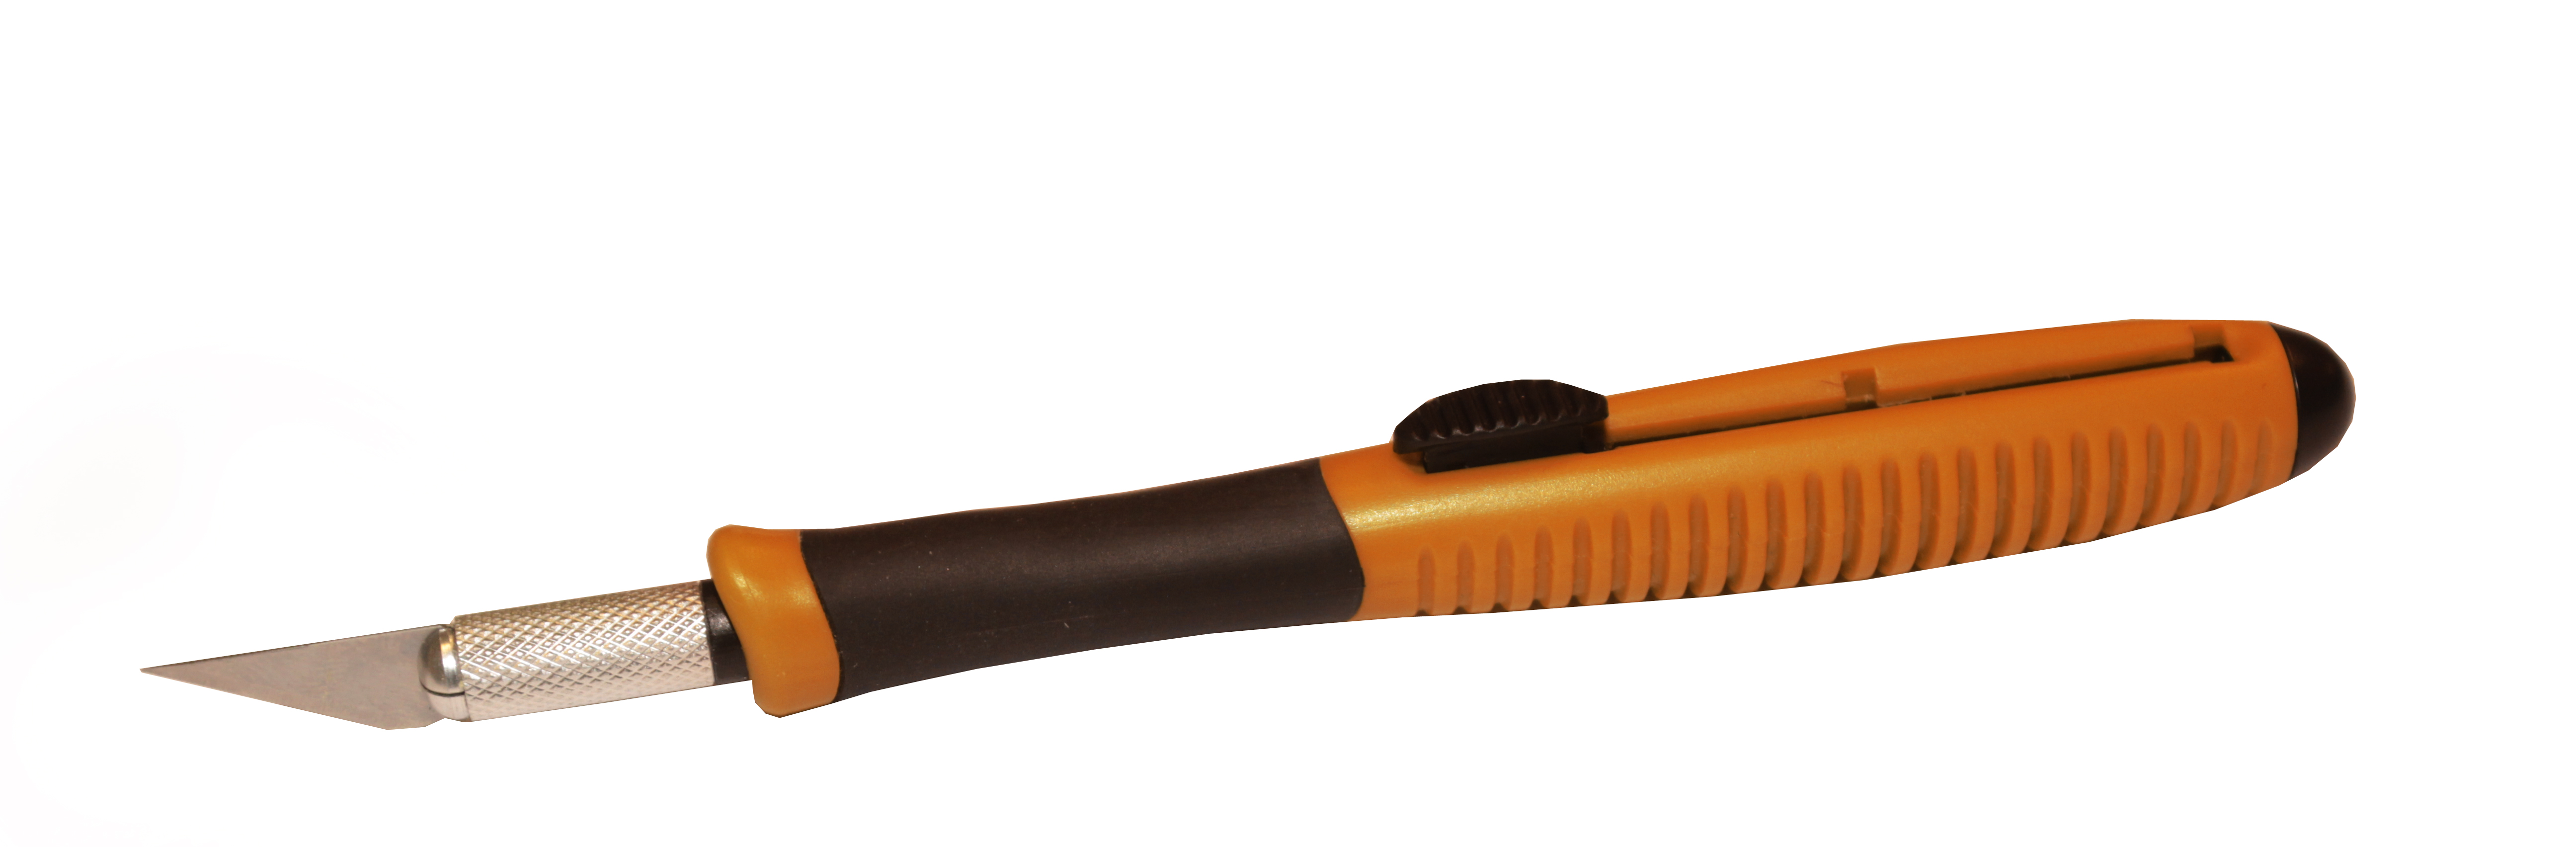 Yellotools Flipper KnifePen  Cuttermesser mit zwei Funktionen